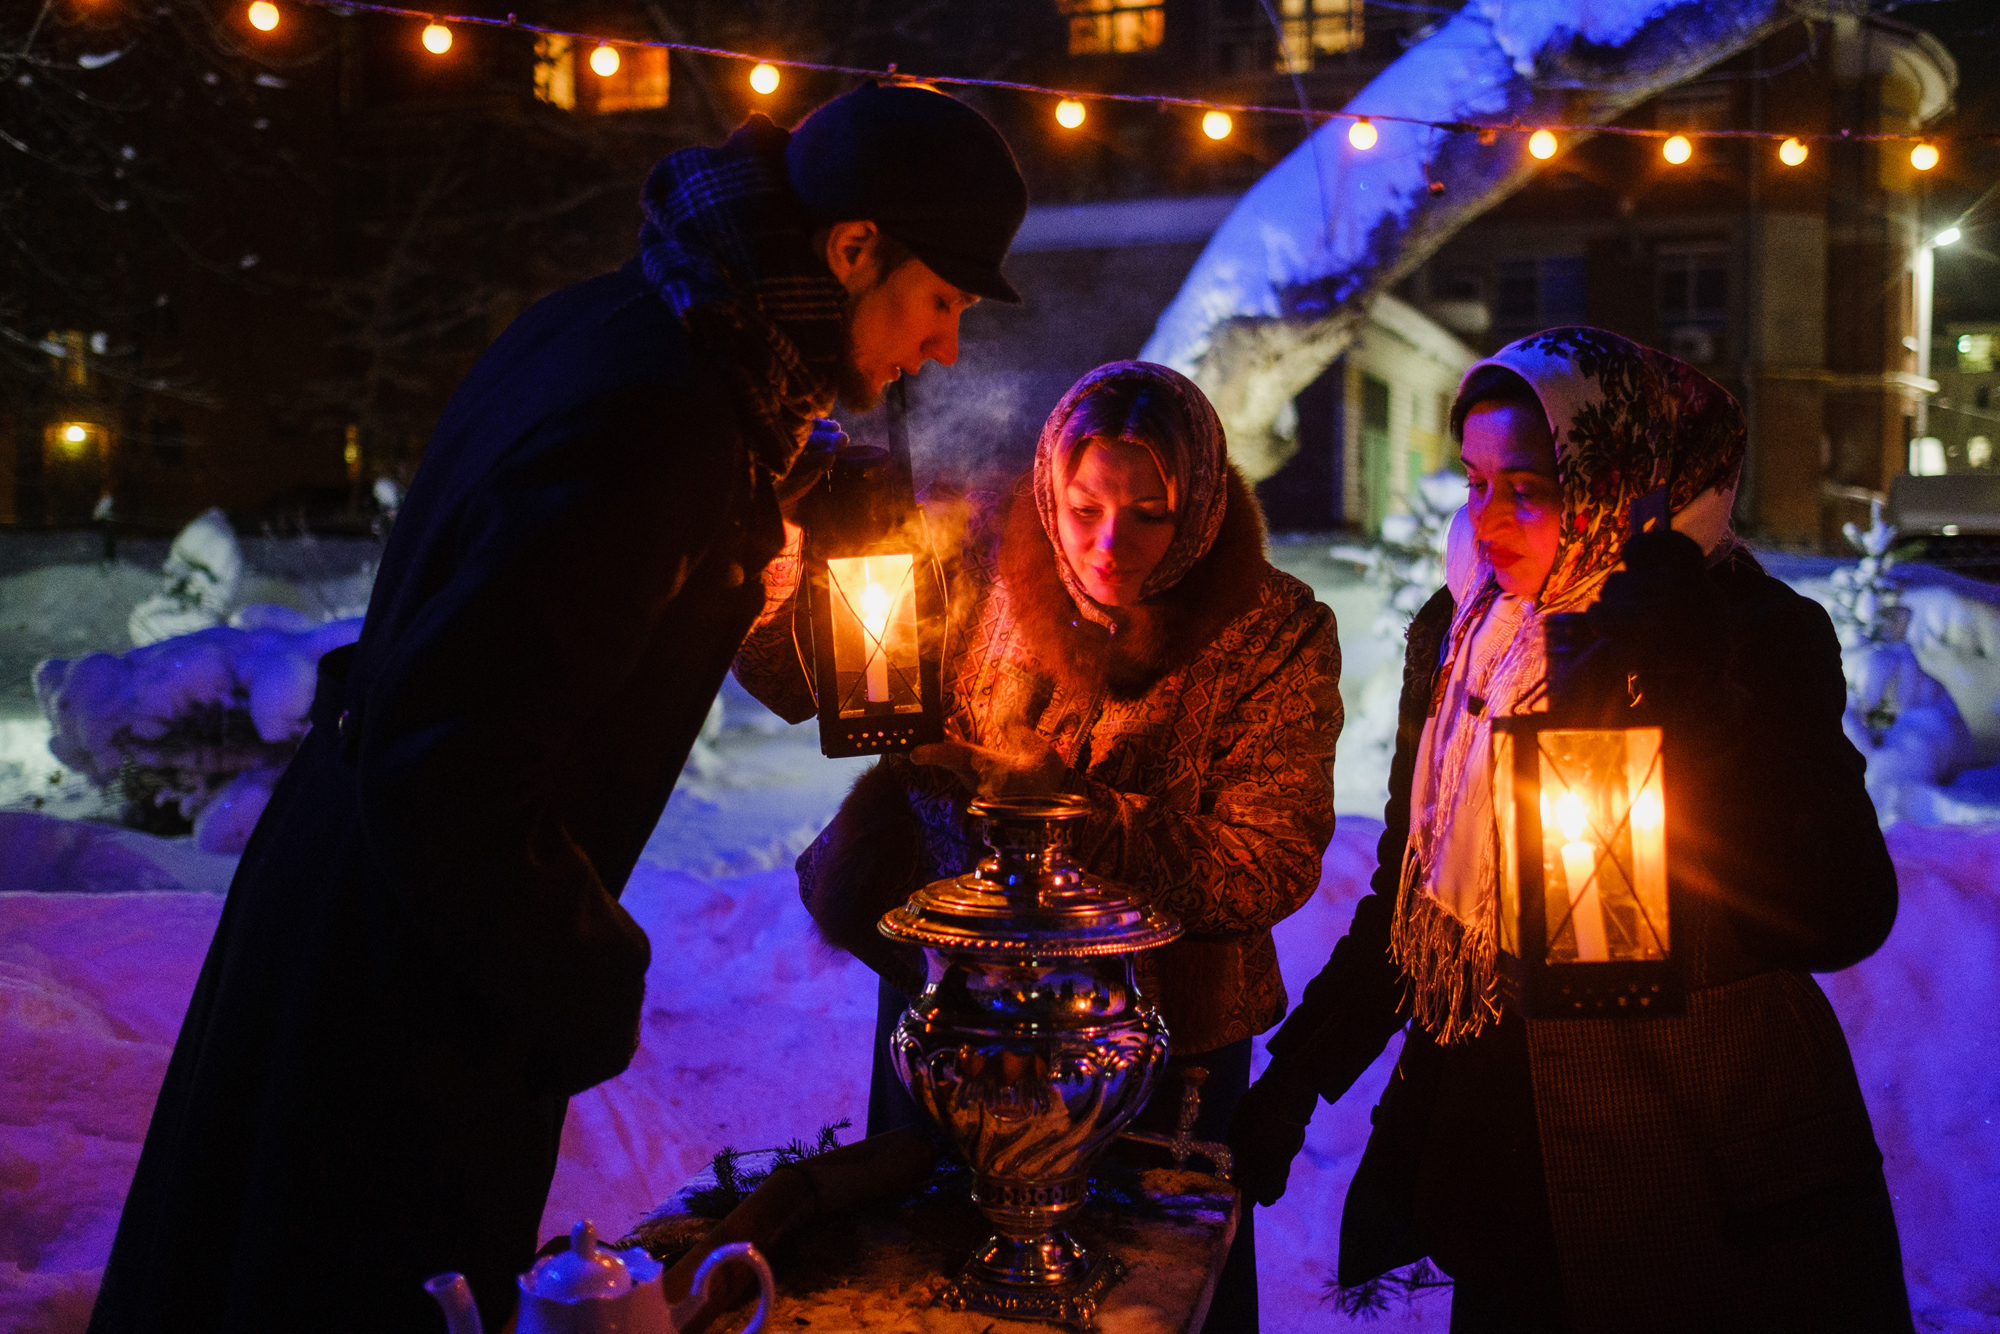 Праздник света пройдет в «Заповедных кварталах» Нижнего Новгорода 25 декабря